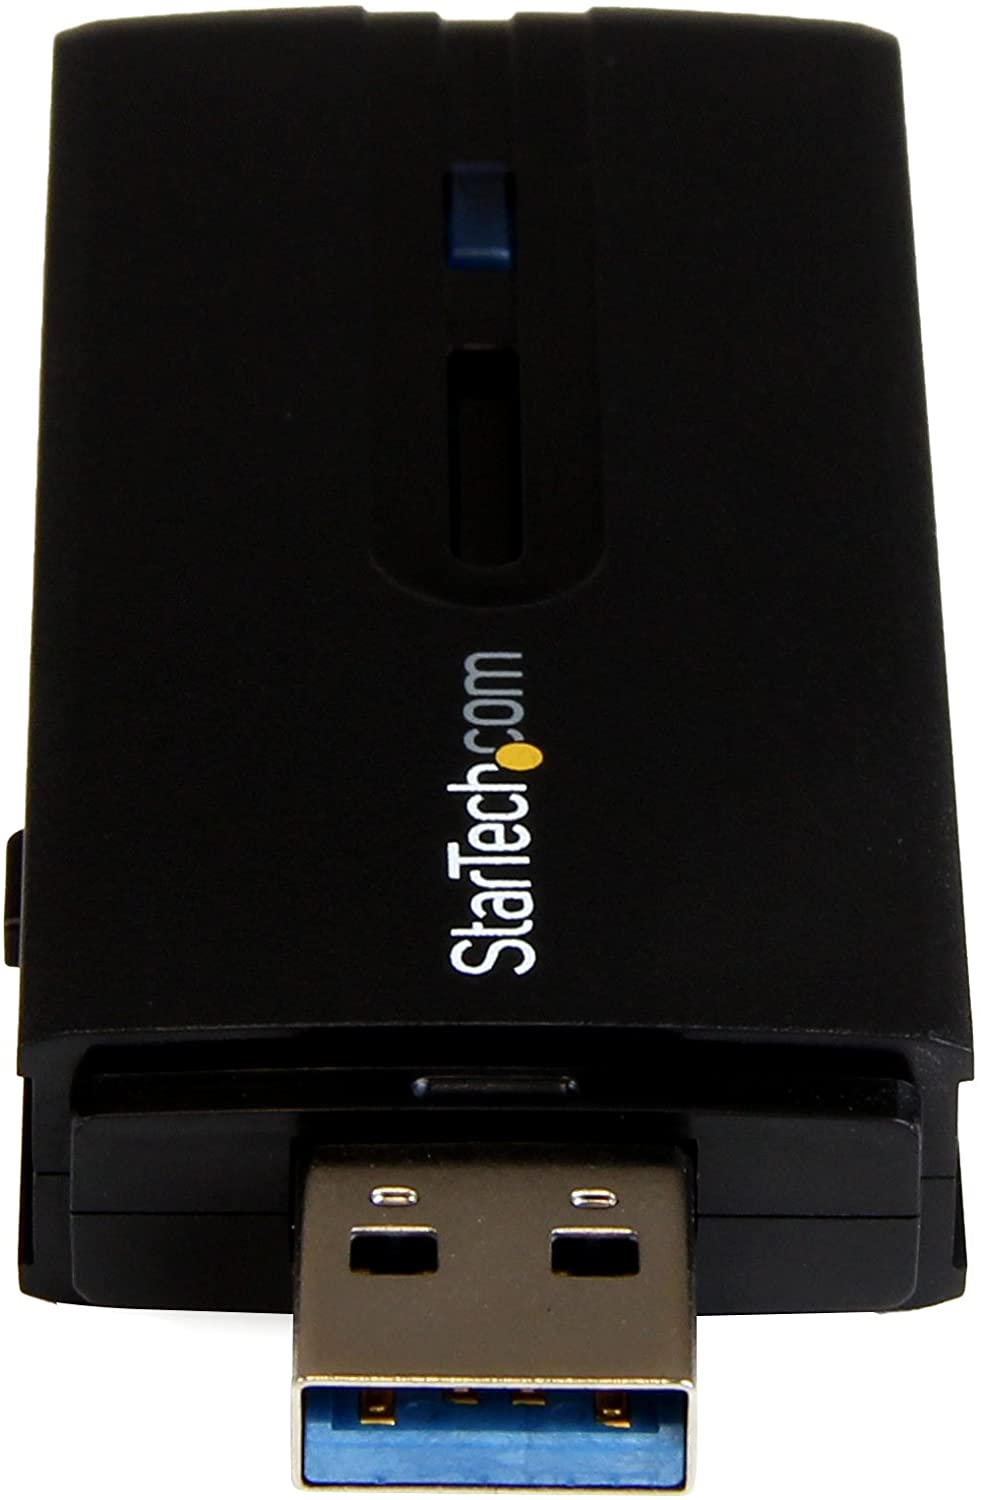 StarTech.com Adaptateur réseau sans fil AC double bande AC1200 USB 3.0 - Adaptateur WiFi 802.11ac - Sans fil USB 2,4 GHz/5 GHz - Carte réseau AC (USB867WAC22)